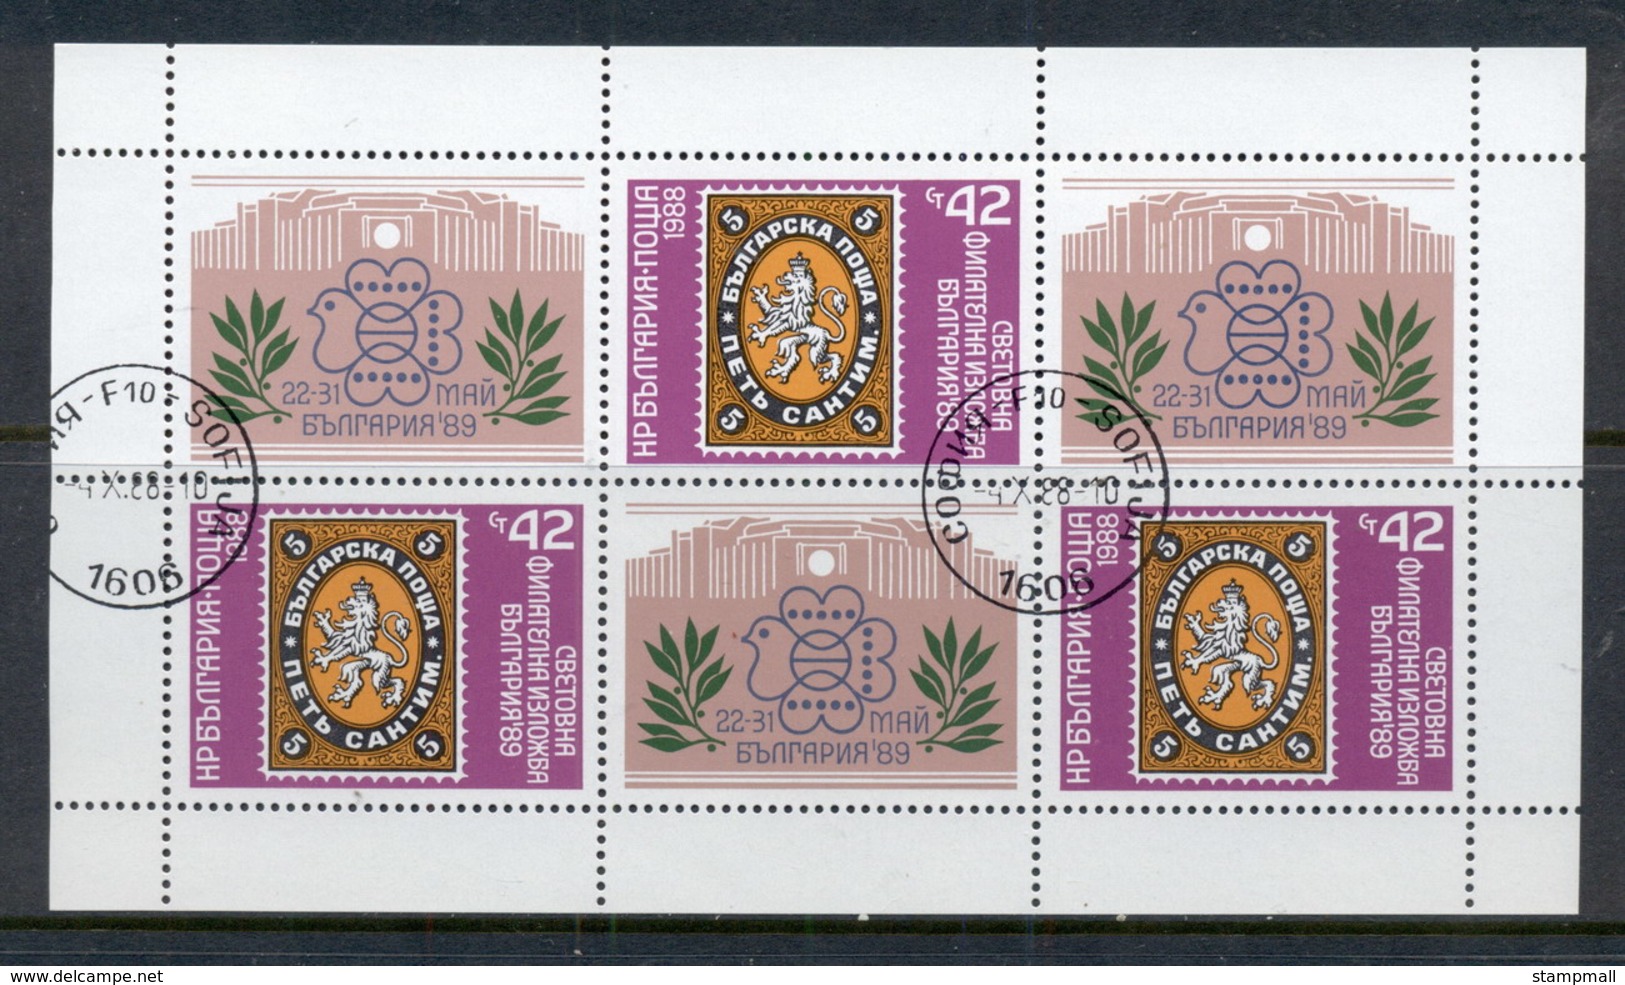 Bulgaria 1988 Bulgaria '89 MS CTO - Unused Stamps